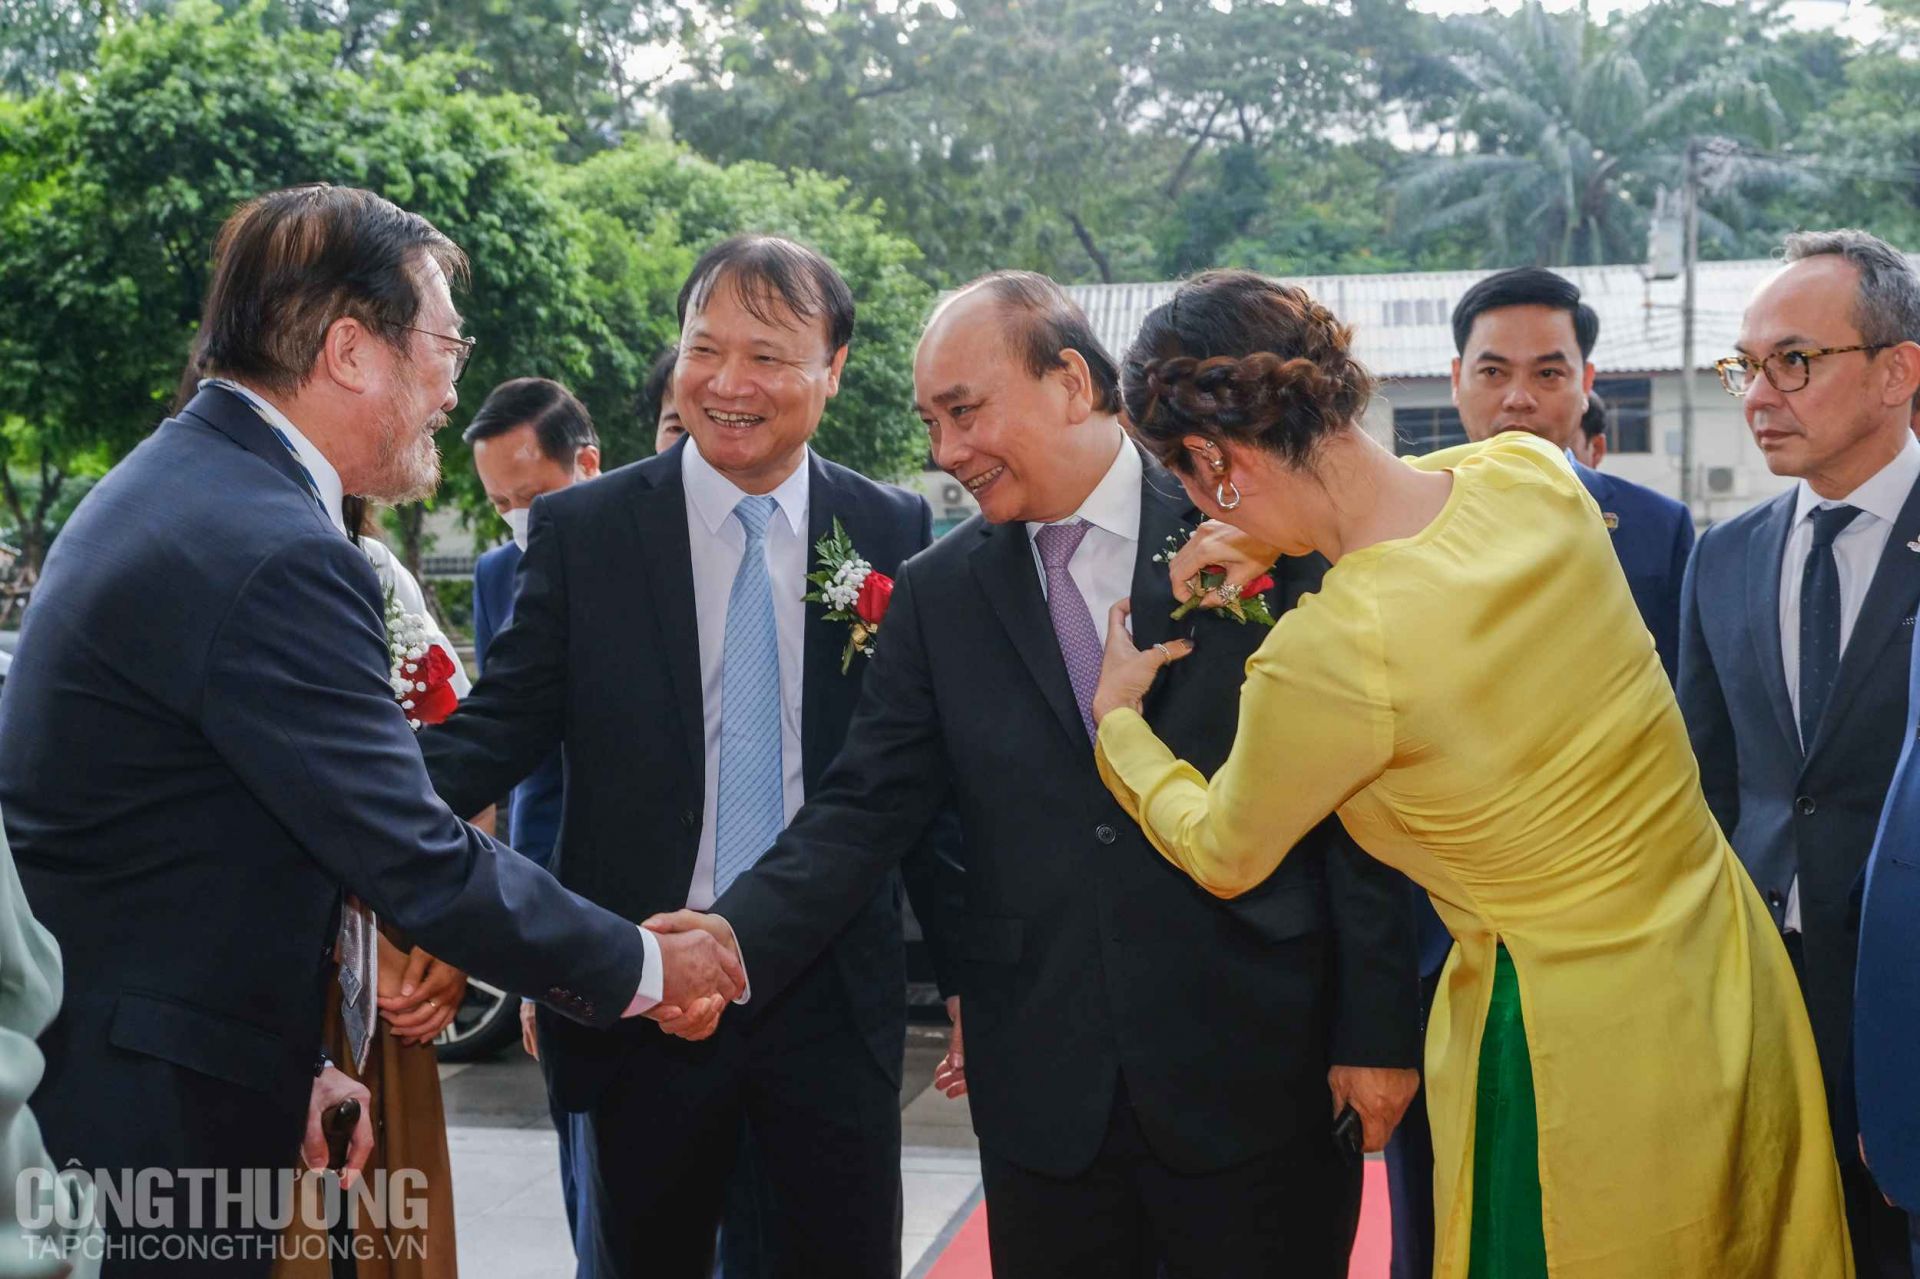 Tuần hàng Việt Nam tại Thái Lan vinh dự đón tiếp Chủ tịch nước Nguyễn Xuân Phúc tham dự và cắt băng khai mạc sự kiện